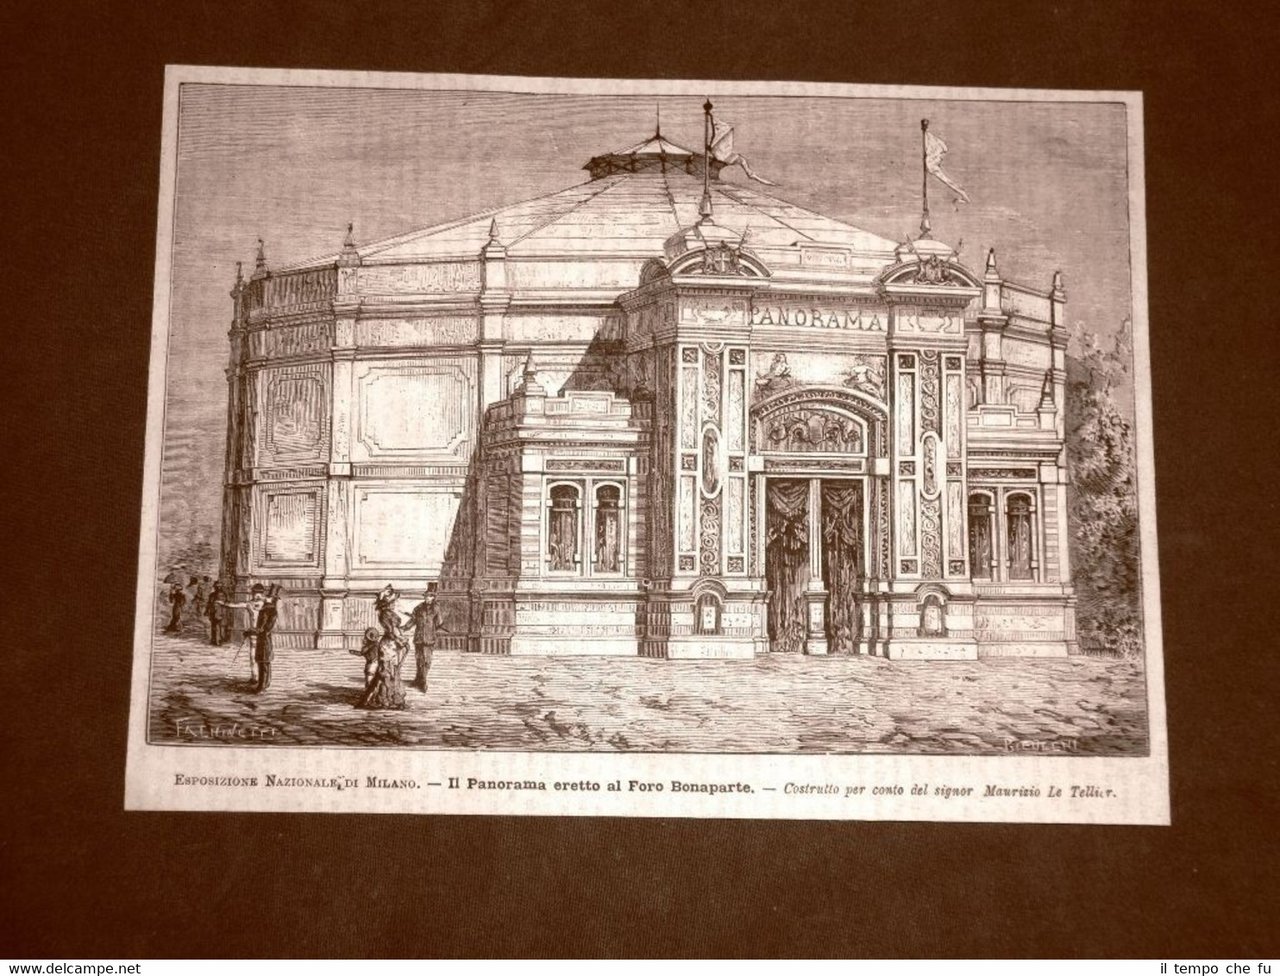 Esposizione Nazionale di Milano nel 1881 Foro Bonaparte per Maurizio …